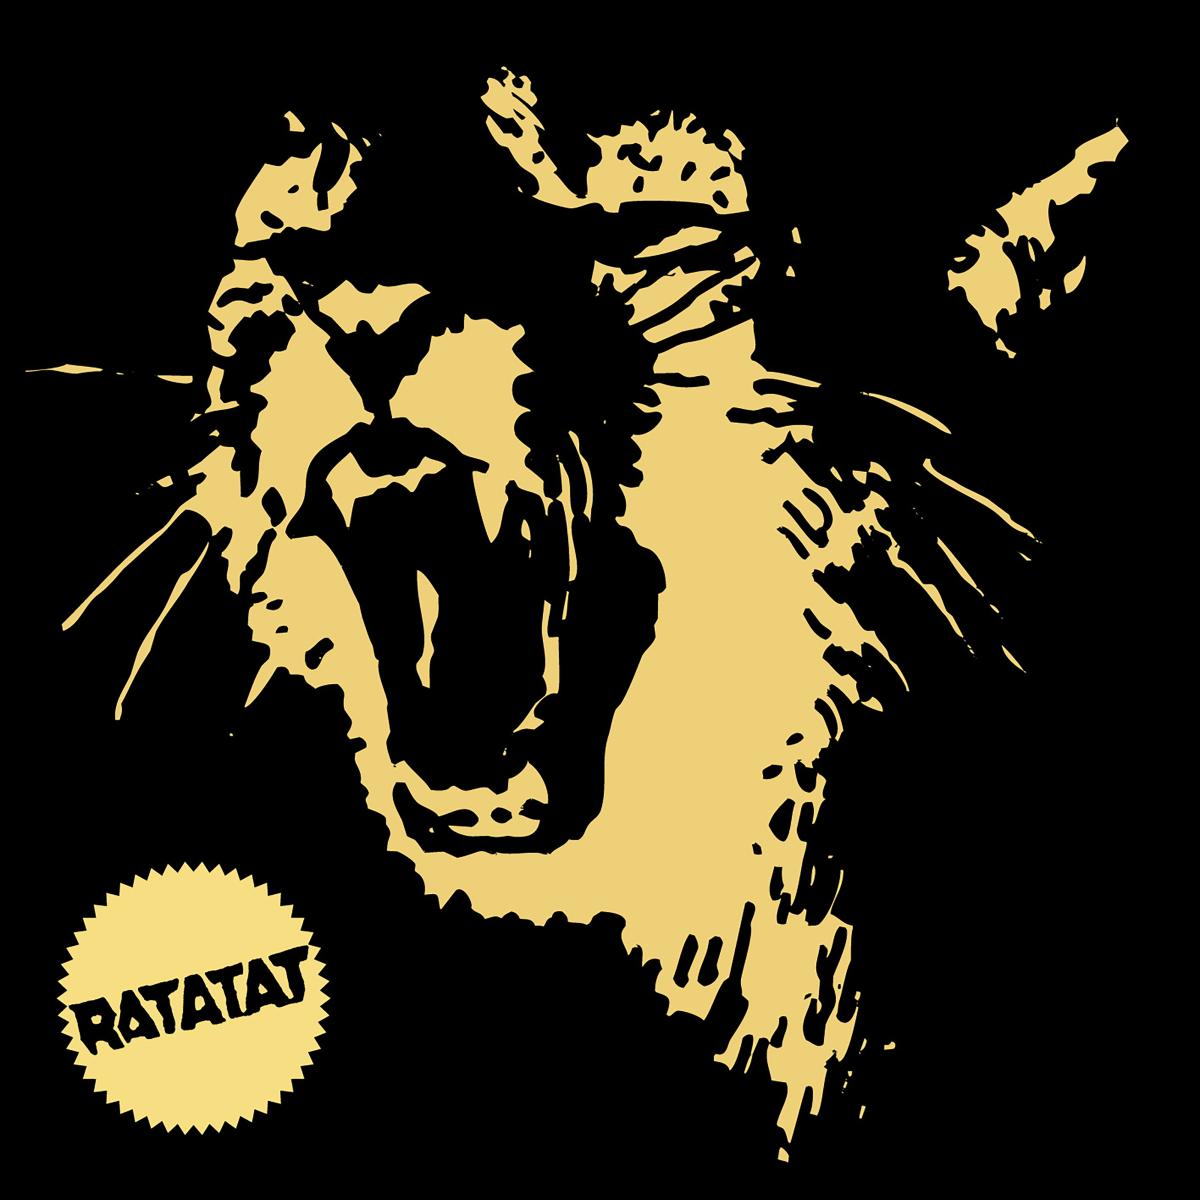 Ratatat - Classics - LP